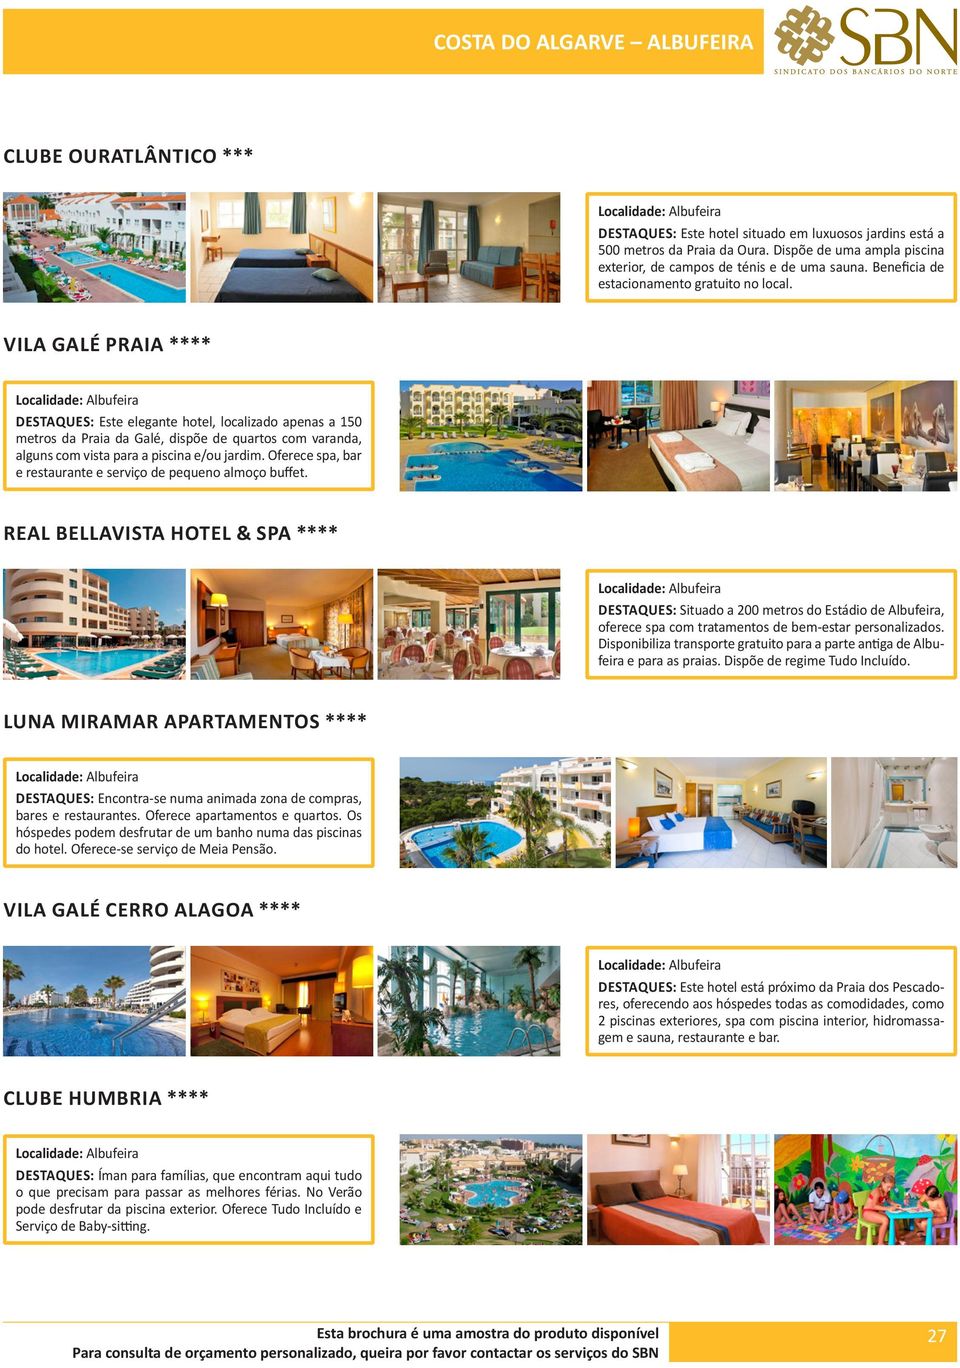 VILA GALÉ PRAIA **** DESTAQUES: Este elegante hotel, localizado apenas a 150 metros da Praia da Galé, dispõe de quartos com varanda, alguns com vista para a piscina e/ou jardim.